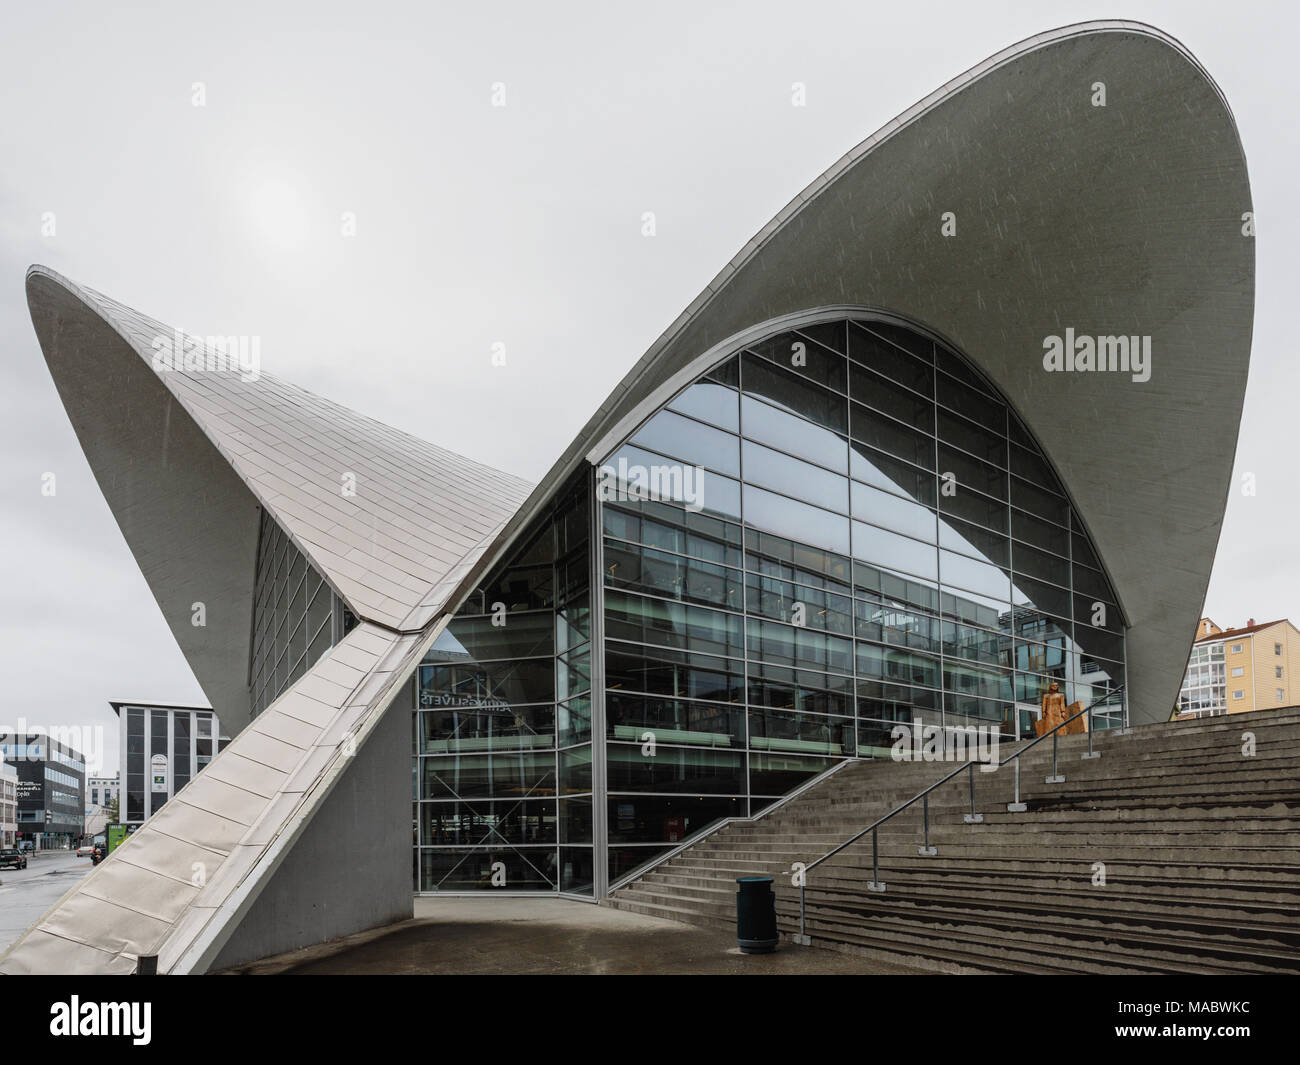 Biblioteca e Archivio, Tromso, Troms, Norvegia. Il tetto curvo è progettato per incanalare in modo sicuro la fusione della neve. Foto Stock